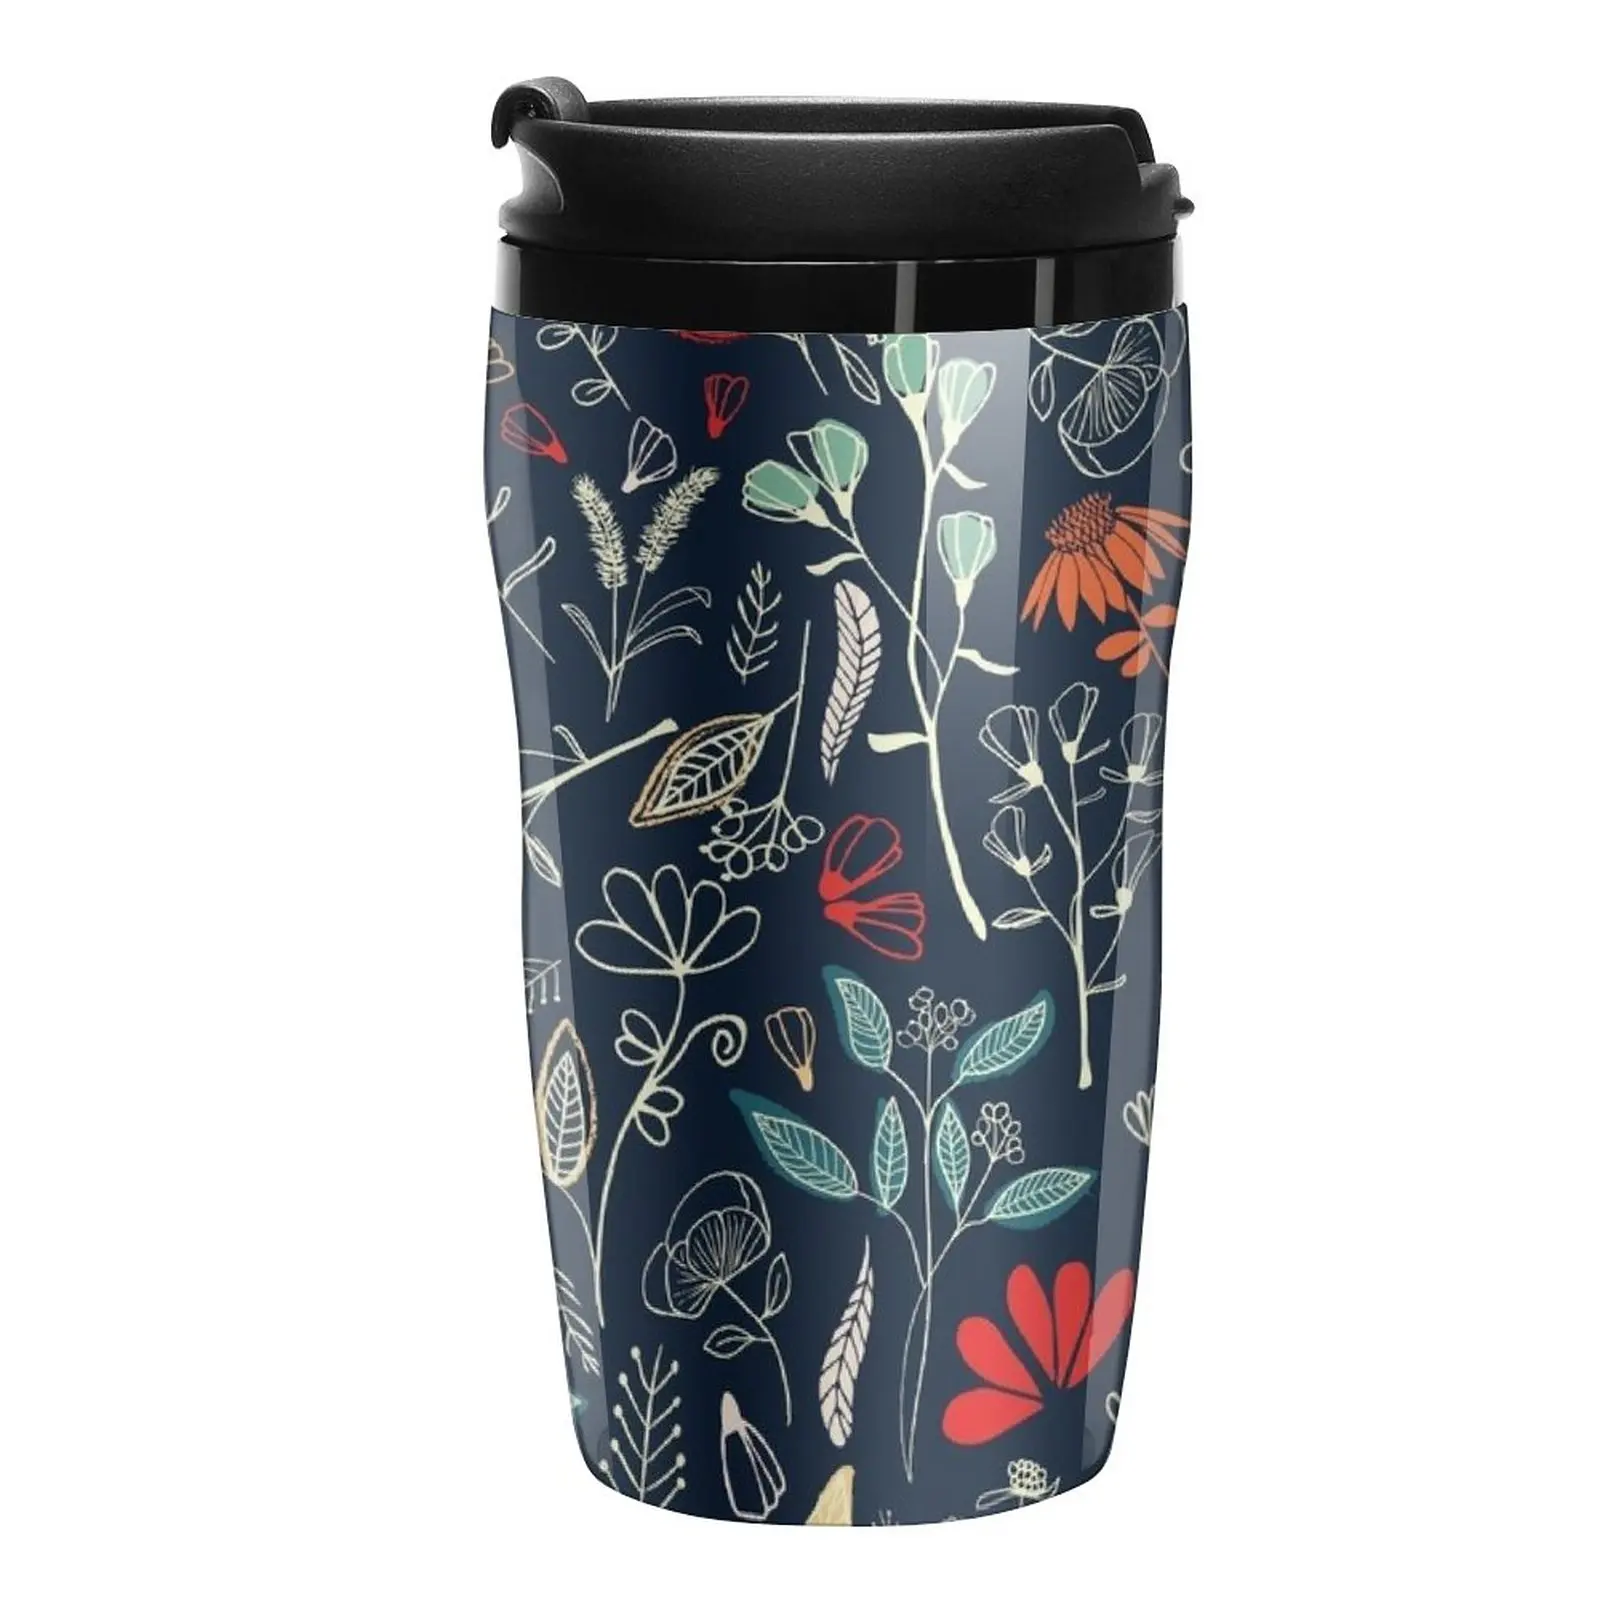 

Новая дорожная кофейная кружка Forest Treasure, изолированная чашка для кофе, набор кофейных чашек, Термокружка для кофе, элегантные кофейные чашки